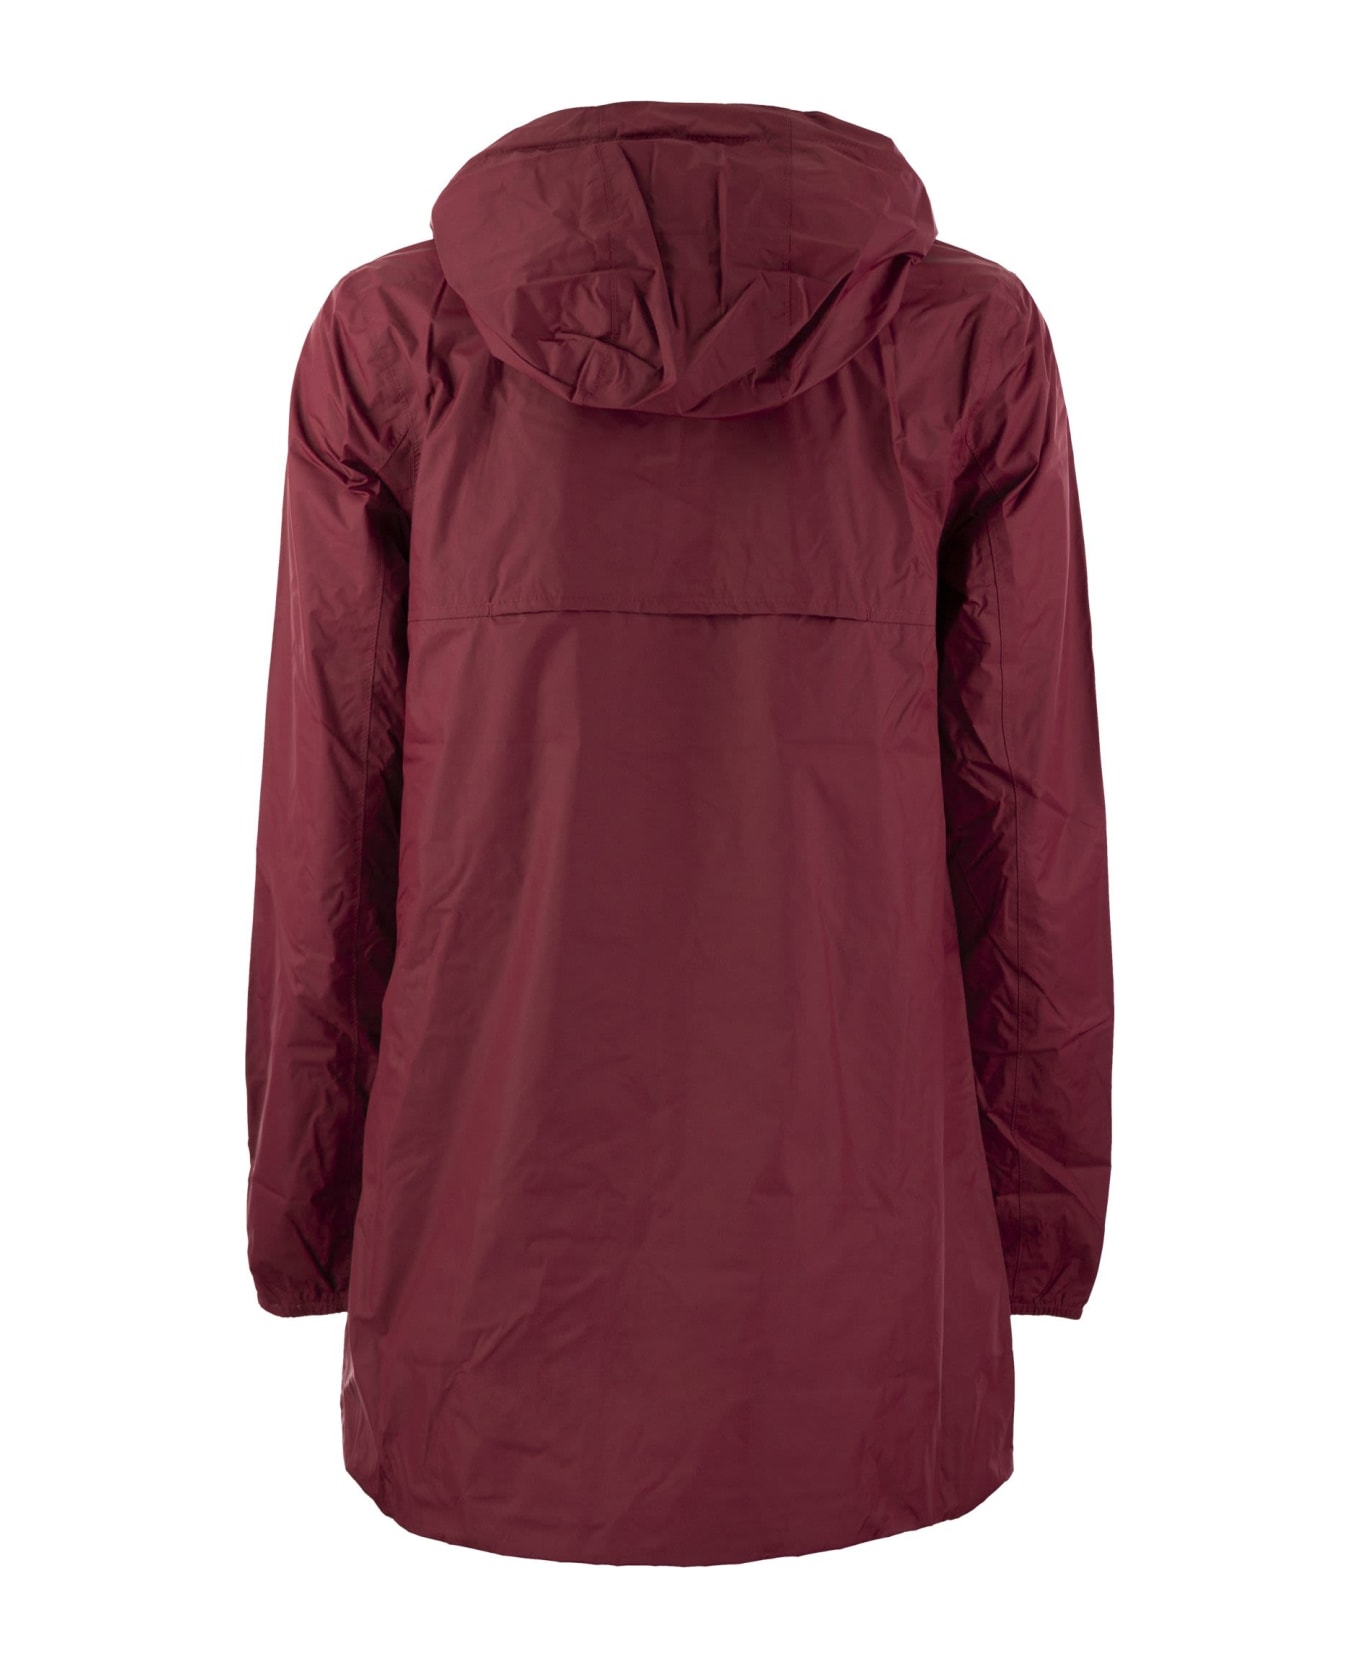 K-Way Sophie Plus - Reversible Hooded Jacket - Bordeaux/ice